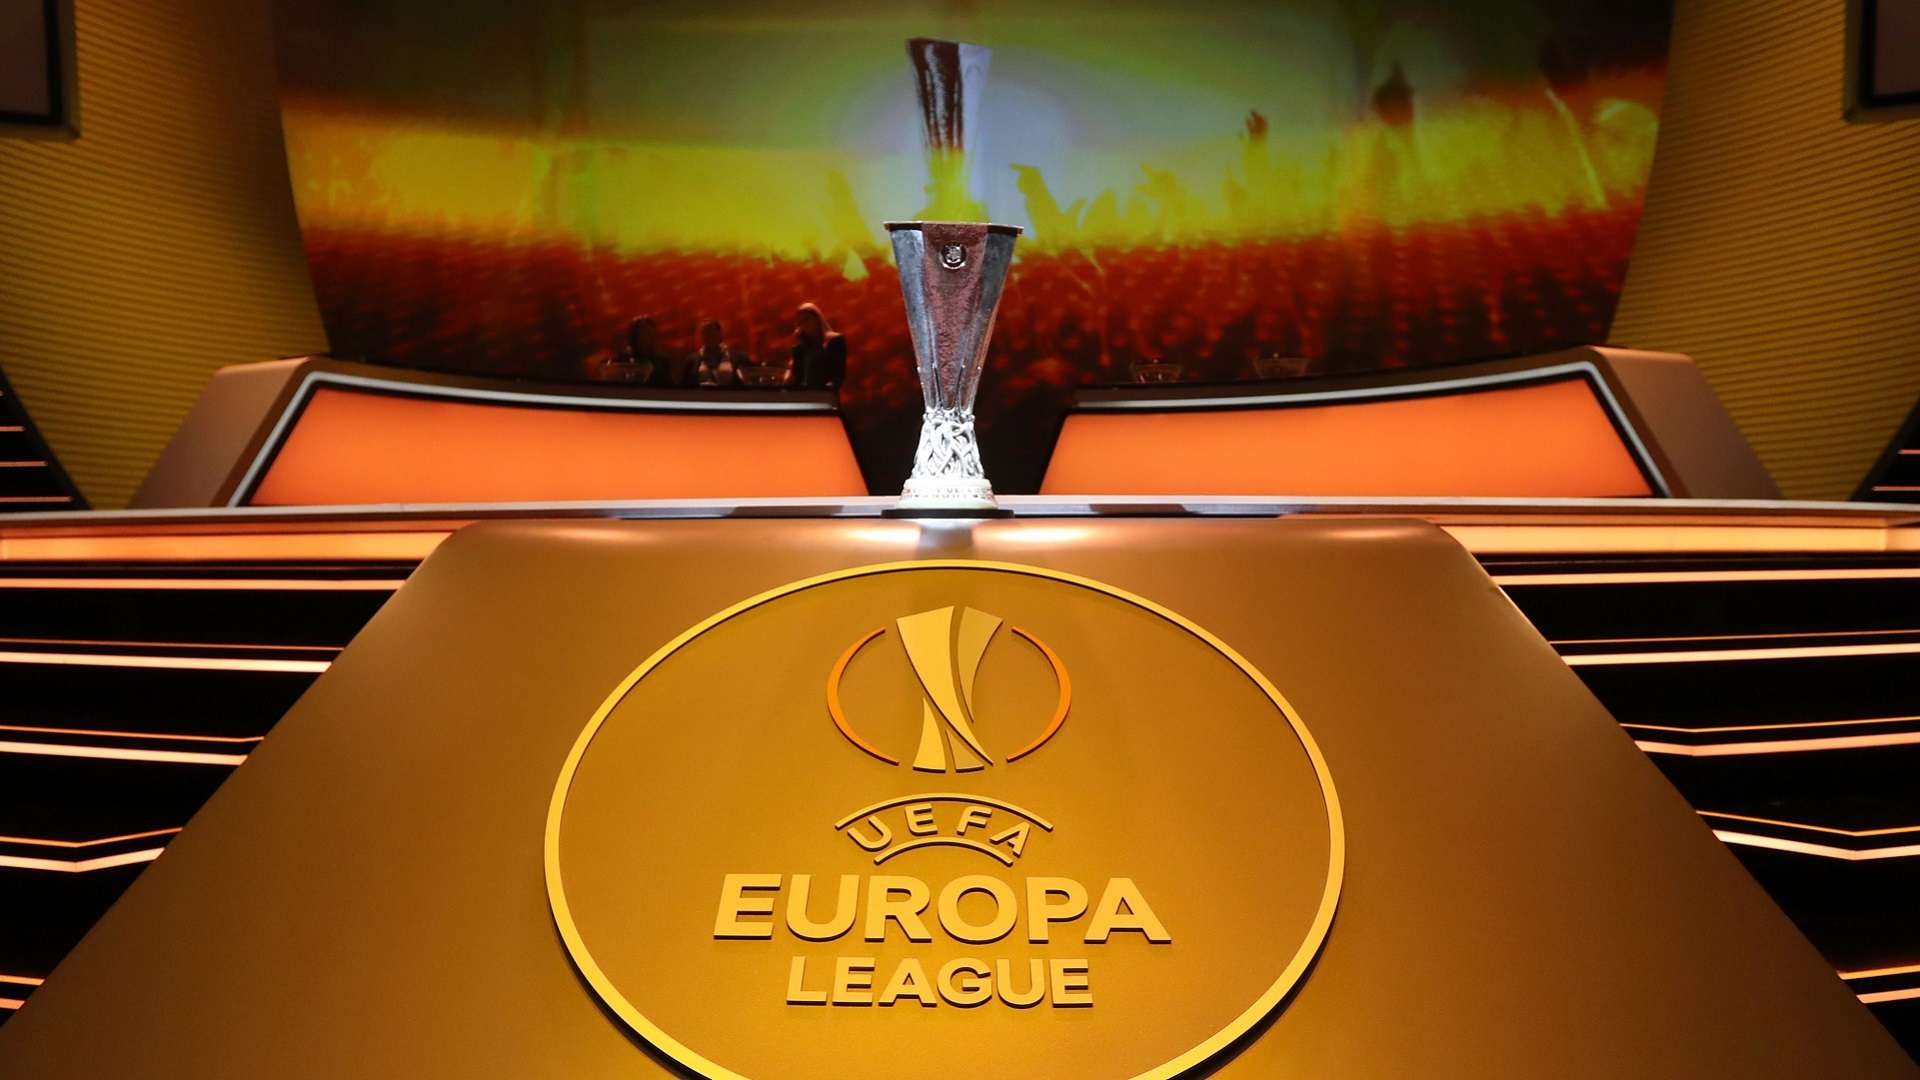 2018-03-16 europa league trophy